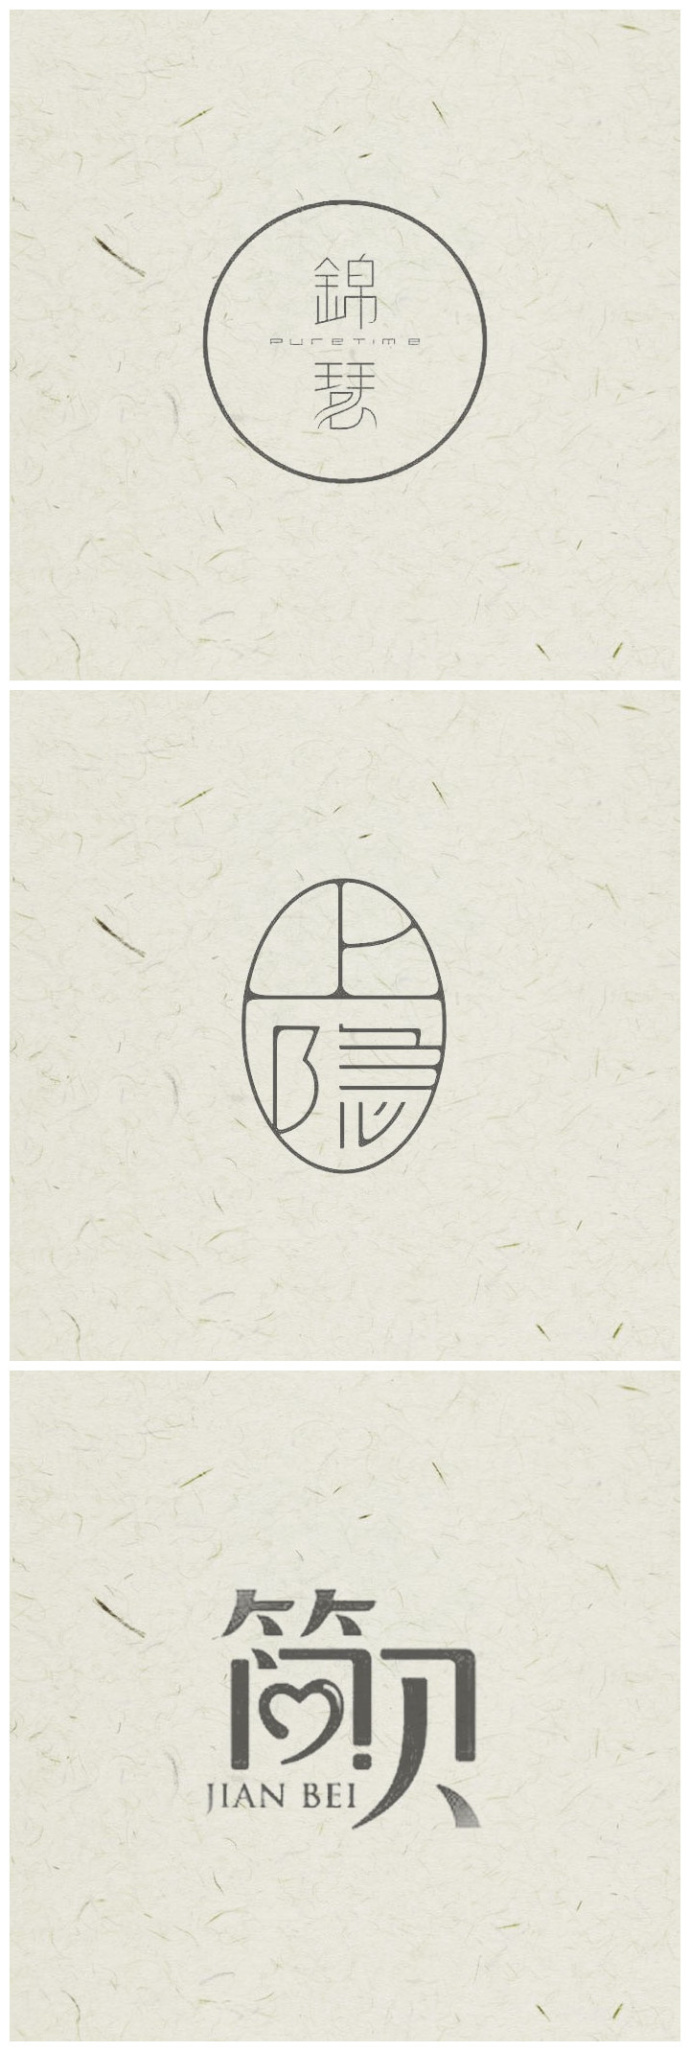 中国风logo设计,感受中国汉字之美